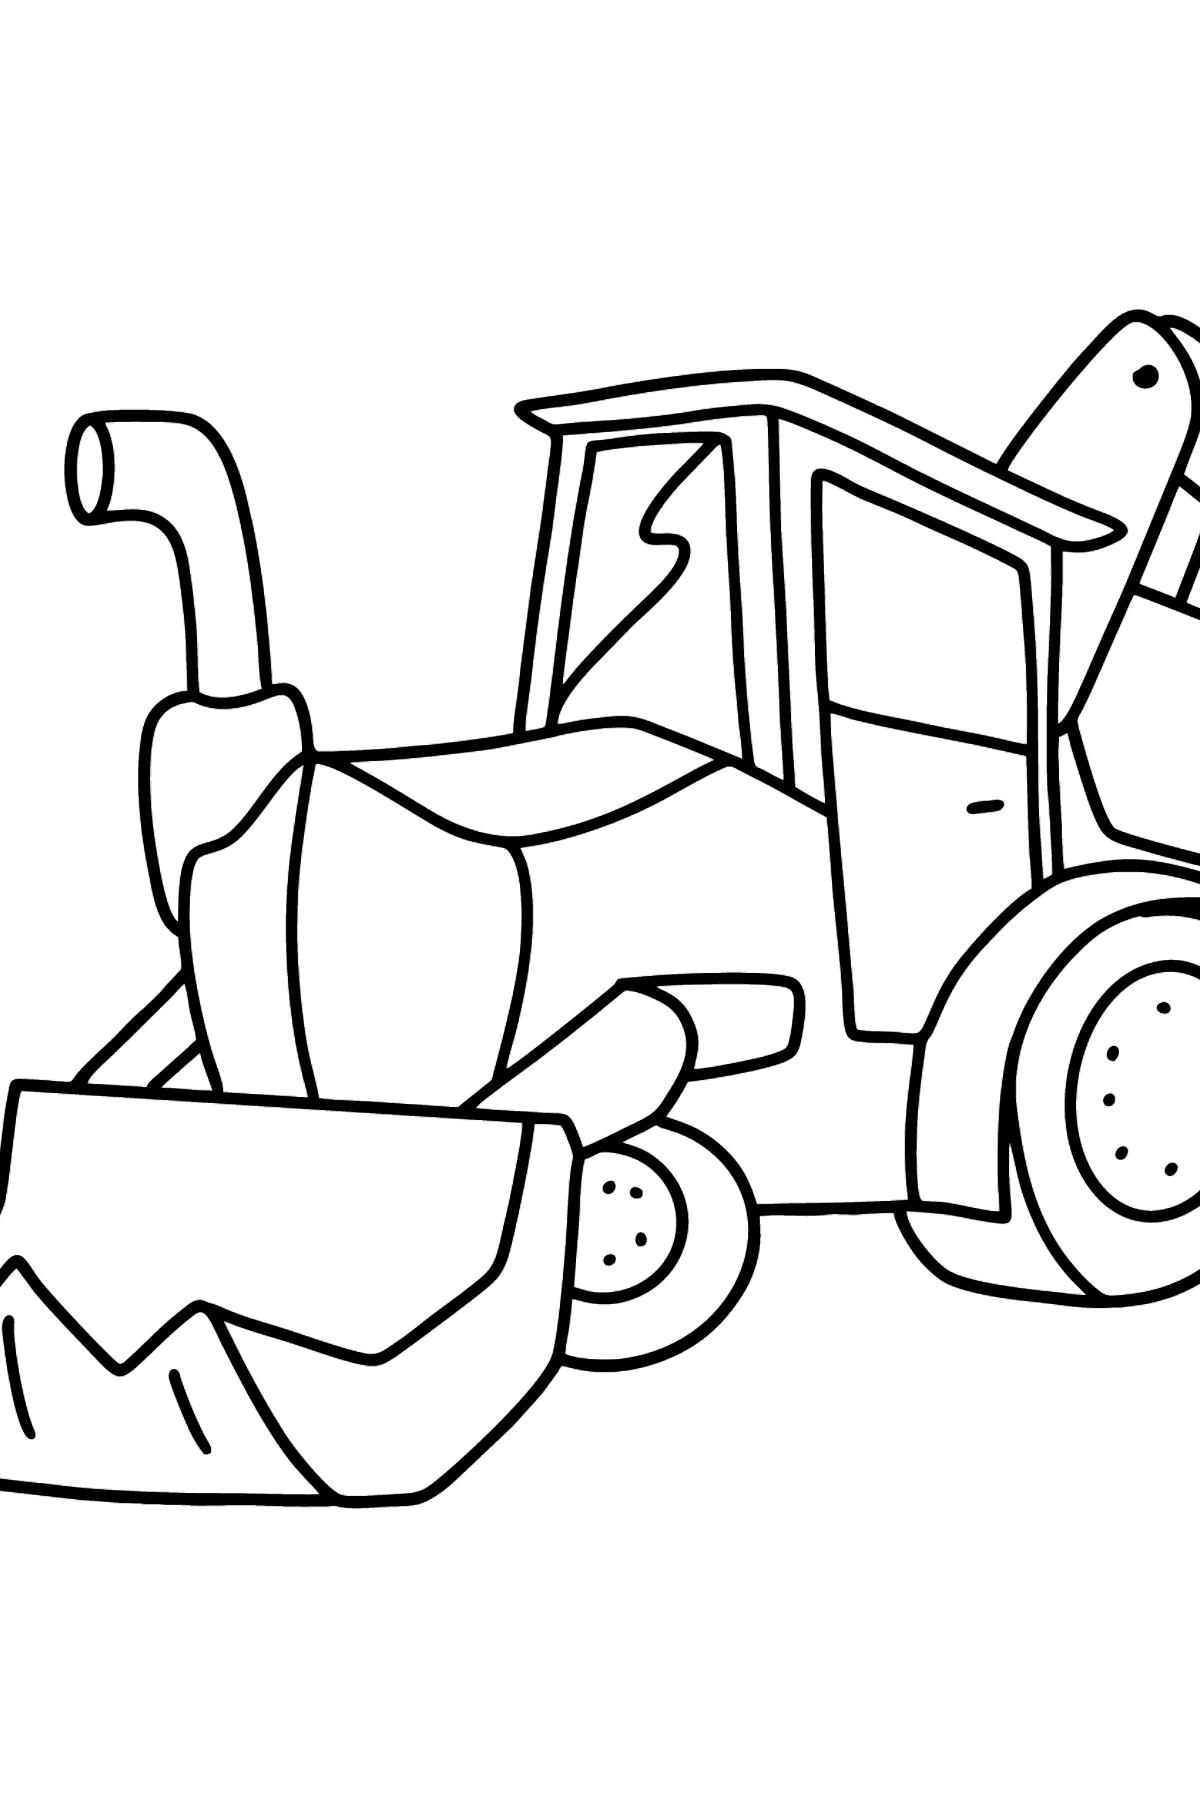 Dibujo de tractor con dos cubos para colorear - Dibujos para Colorear para Niños